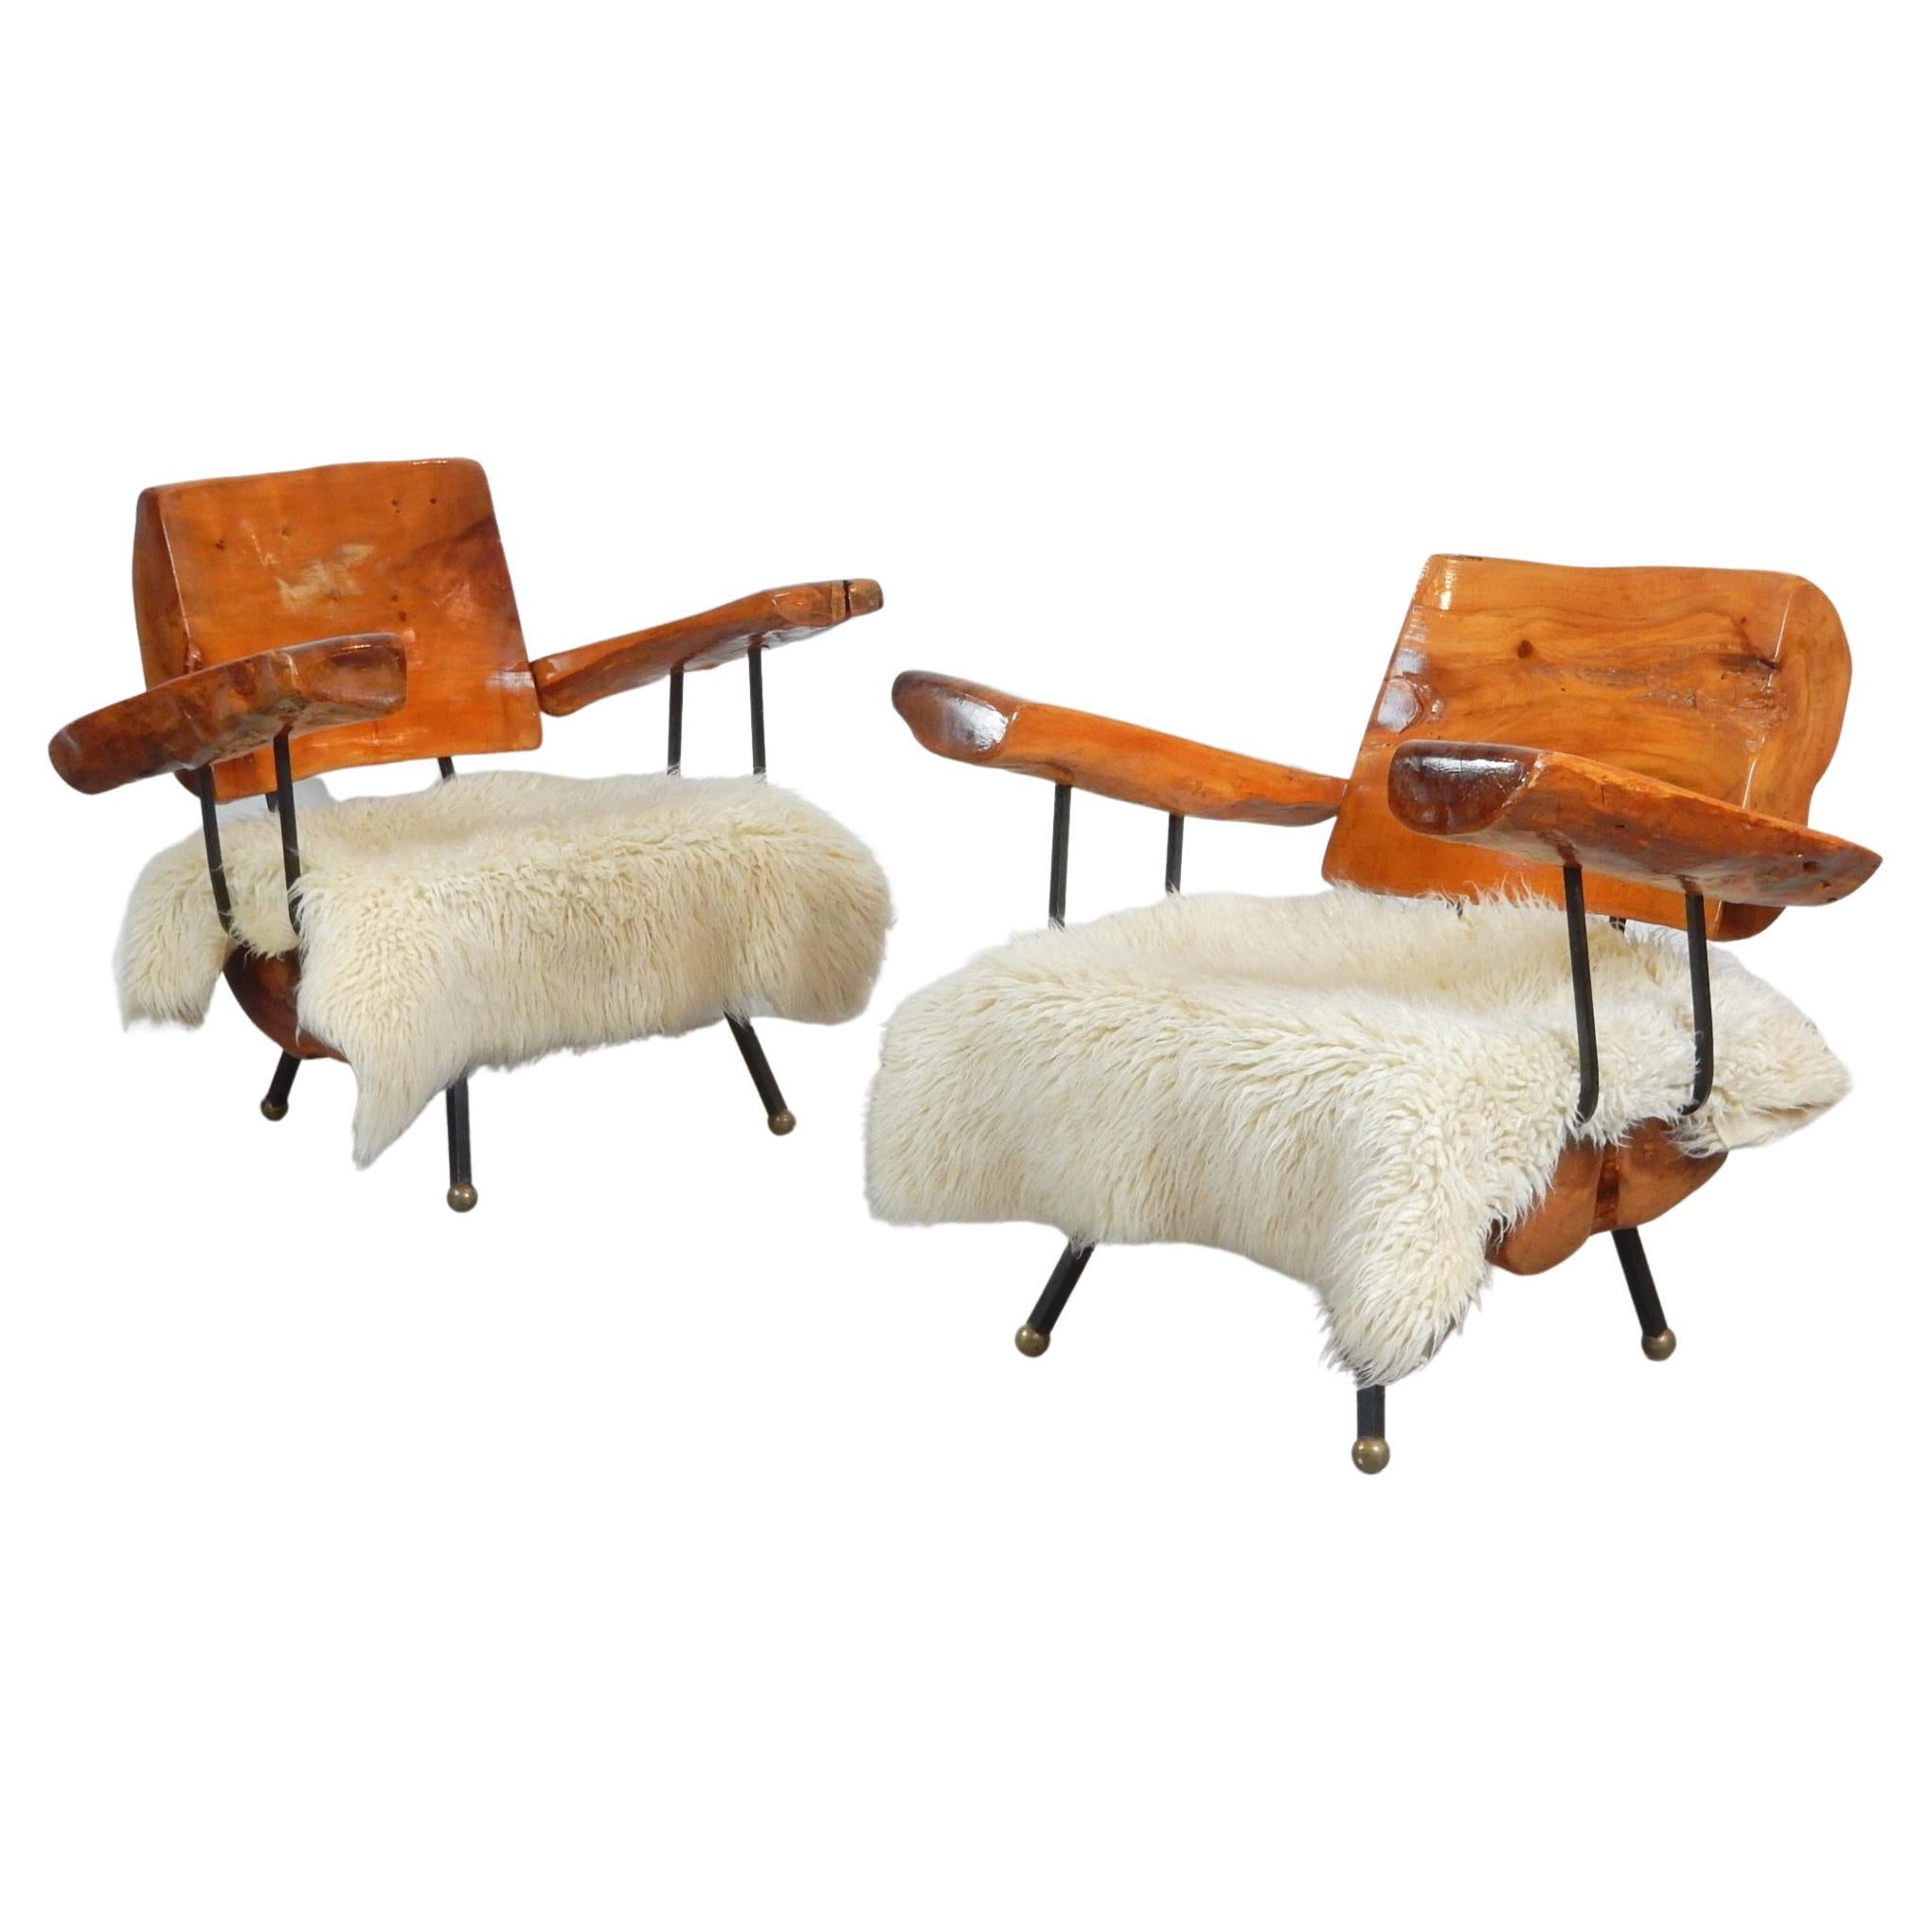 Une étonnante paire de chaises de salon en bois massif de ronce de Sabino.
Les pieds sont formés à la main en fer forgé épais avec de grands pieds boules en bronze.
Chaises confortables, très lourdes et solides.
La table basse assortie est